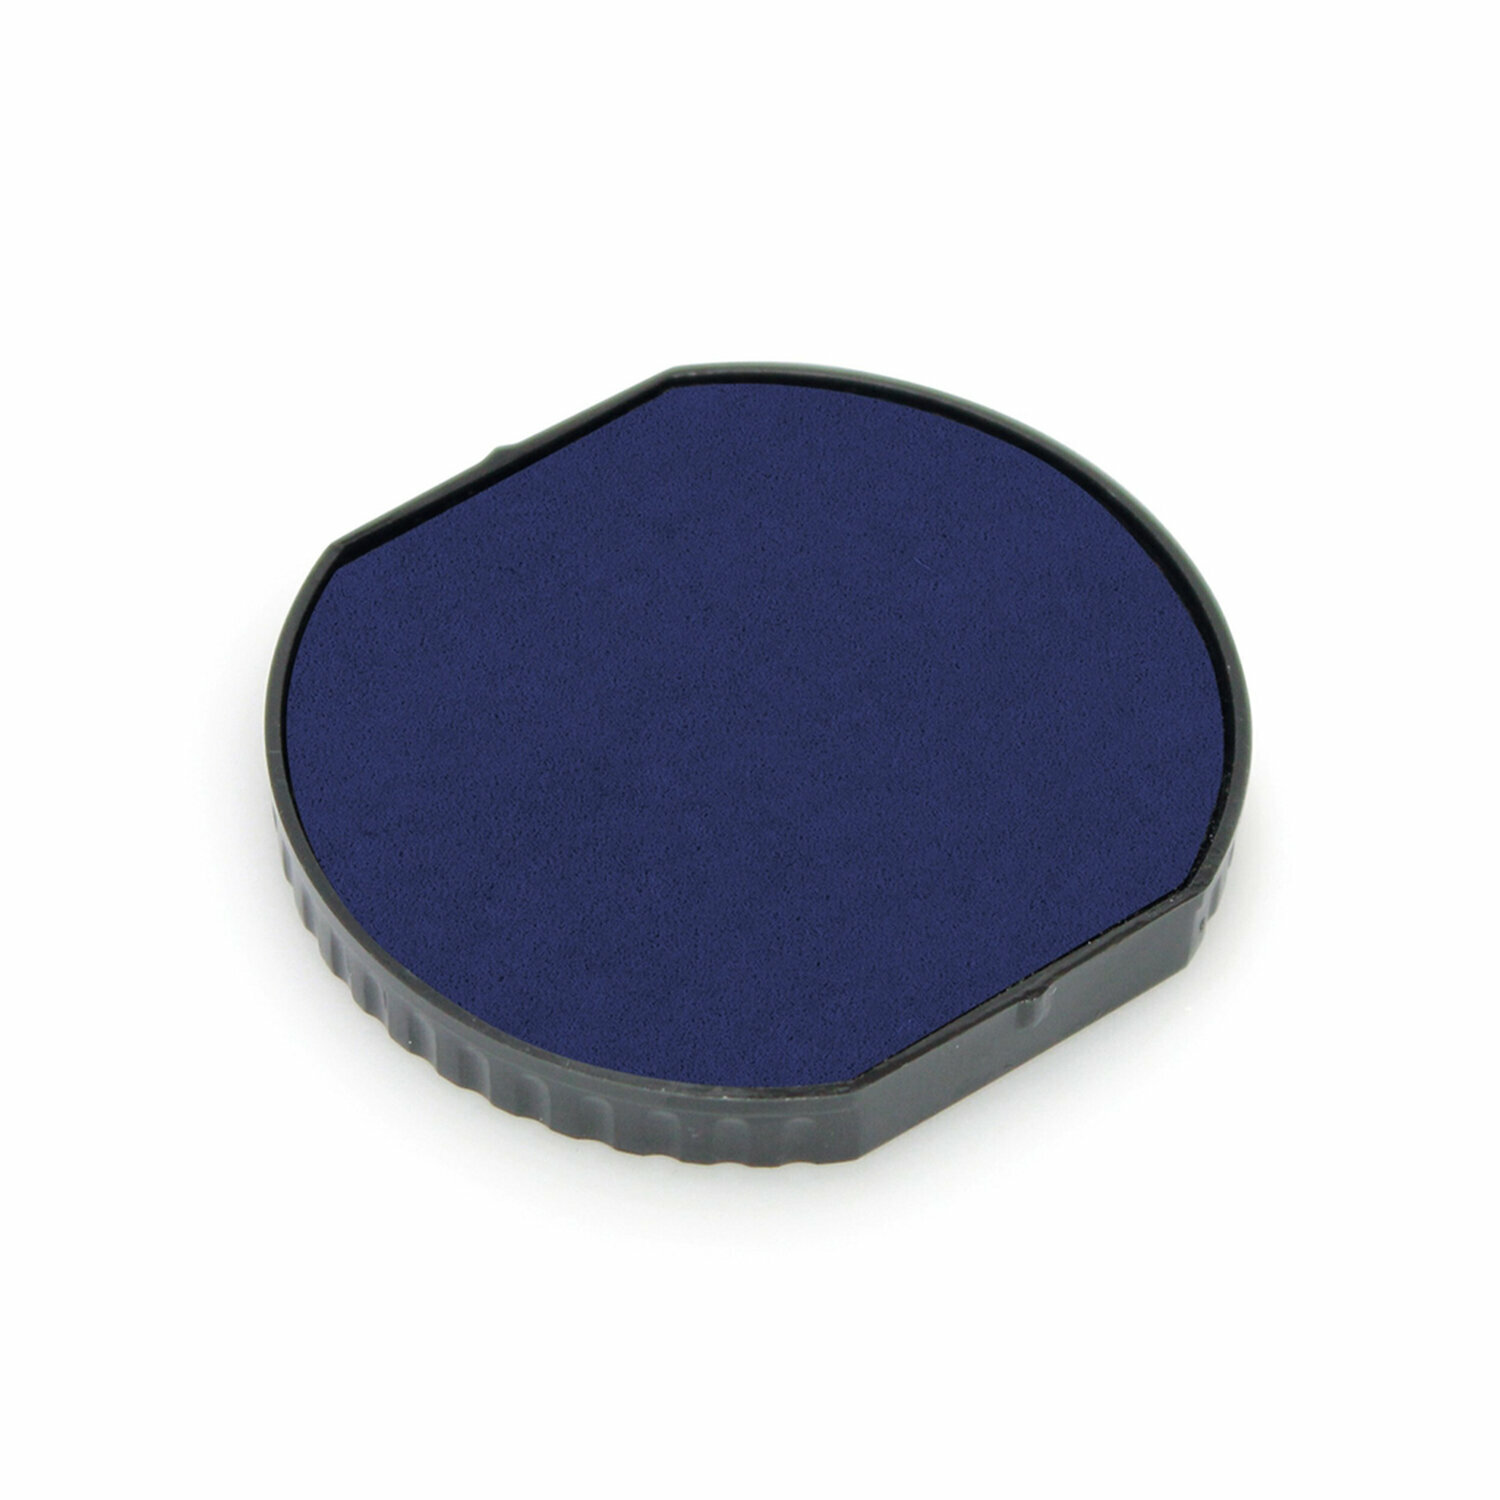 Подушка сменная для печатей диаметром 50 мм, синяя, для TRODAT 46050, арт. 6\46050, 192659, - Комплект 5 шт.(компл.)